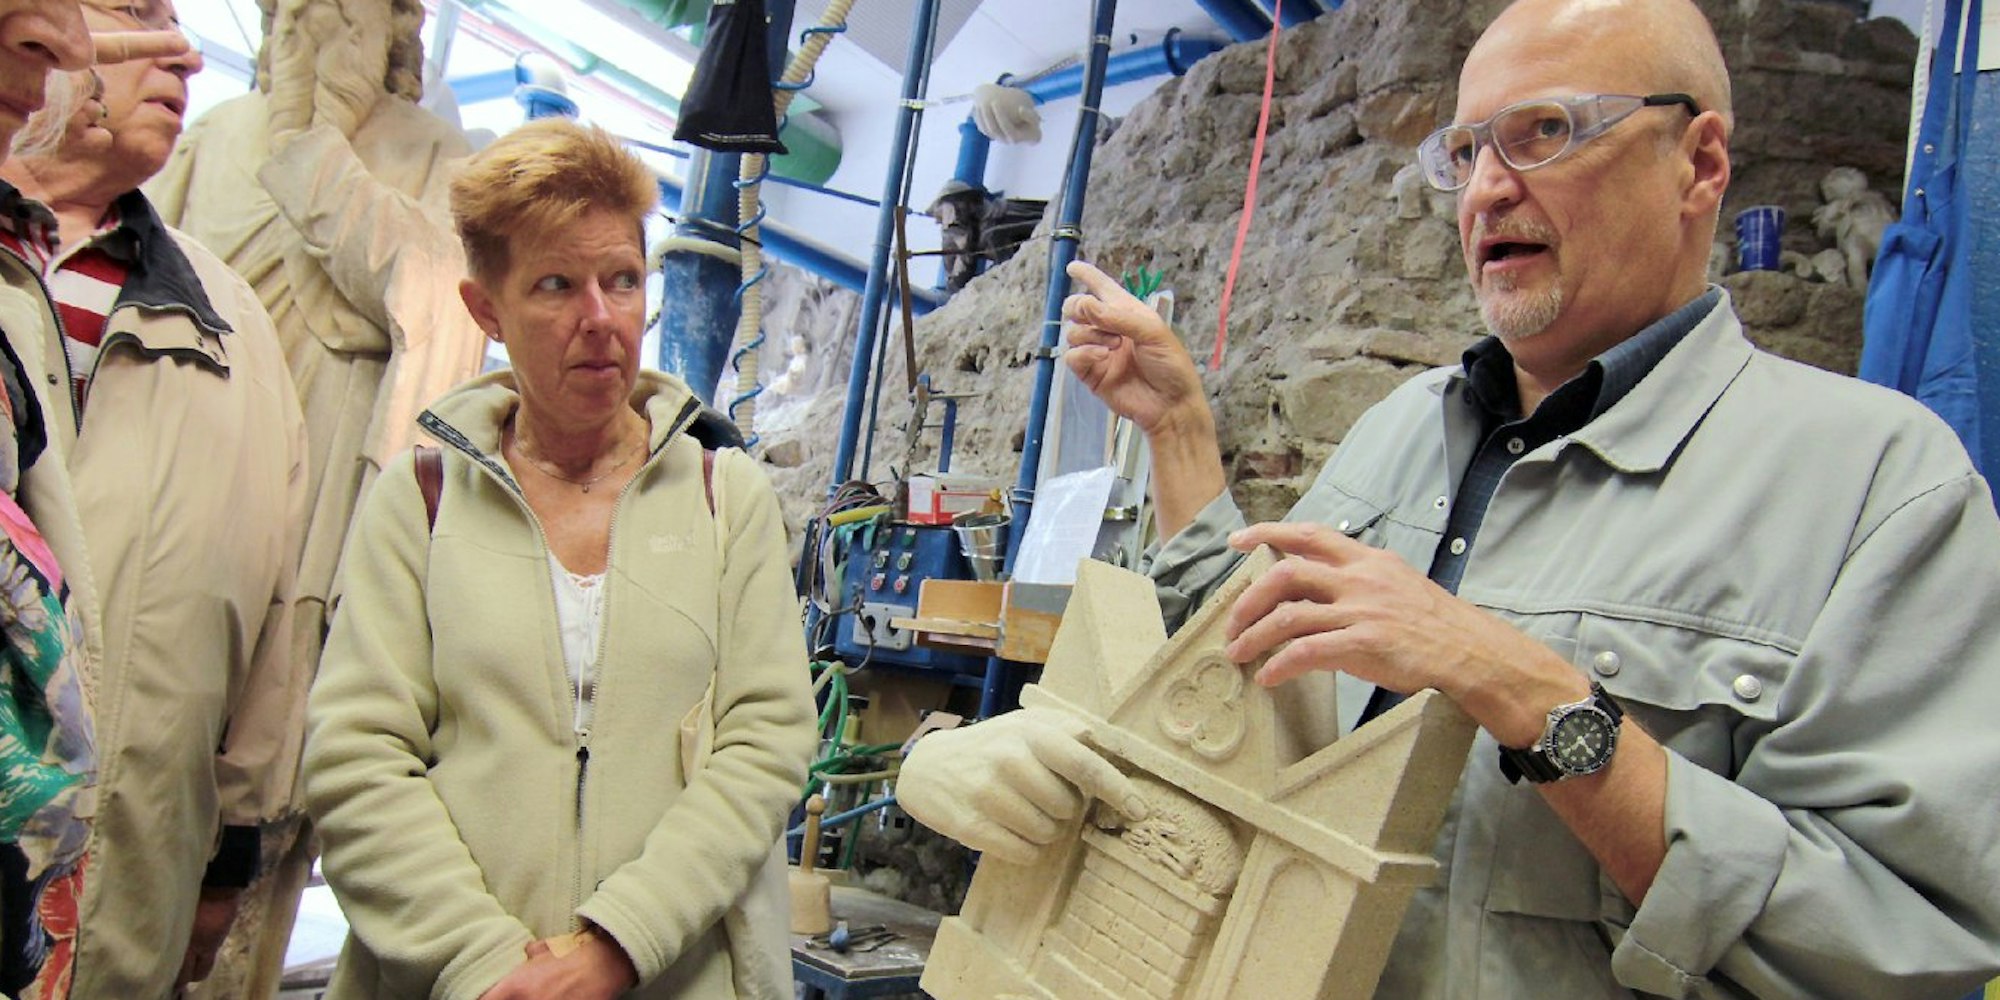 Bildhauer Michael Oster erläuterte den Besuchern in der Dombauhütte seine Arbeit.